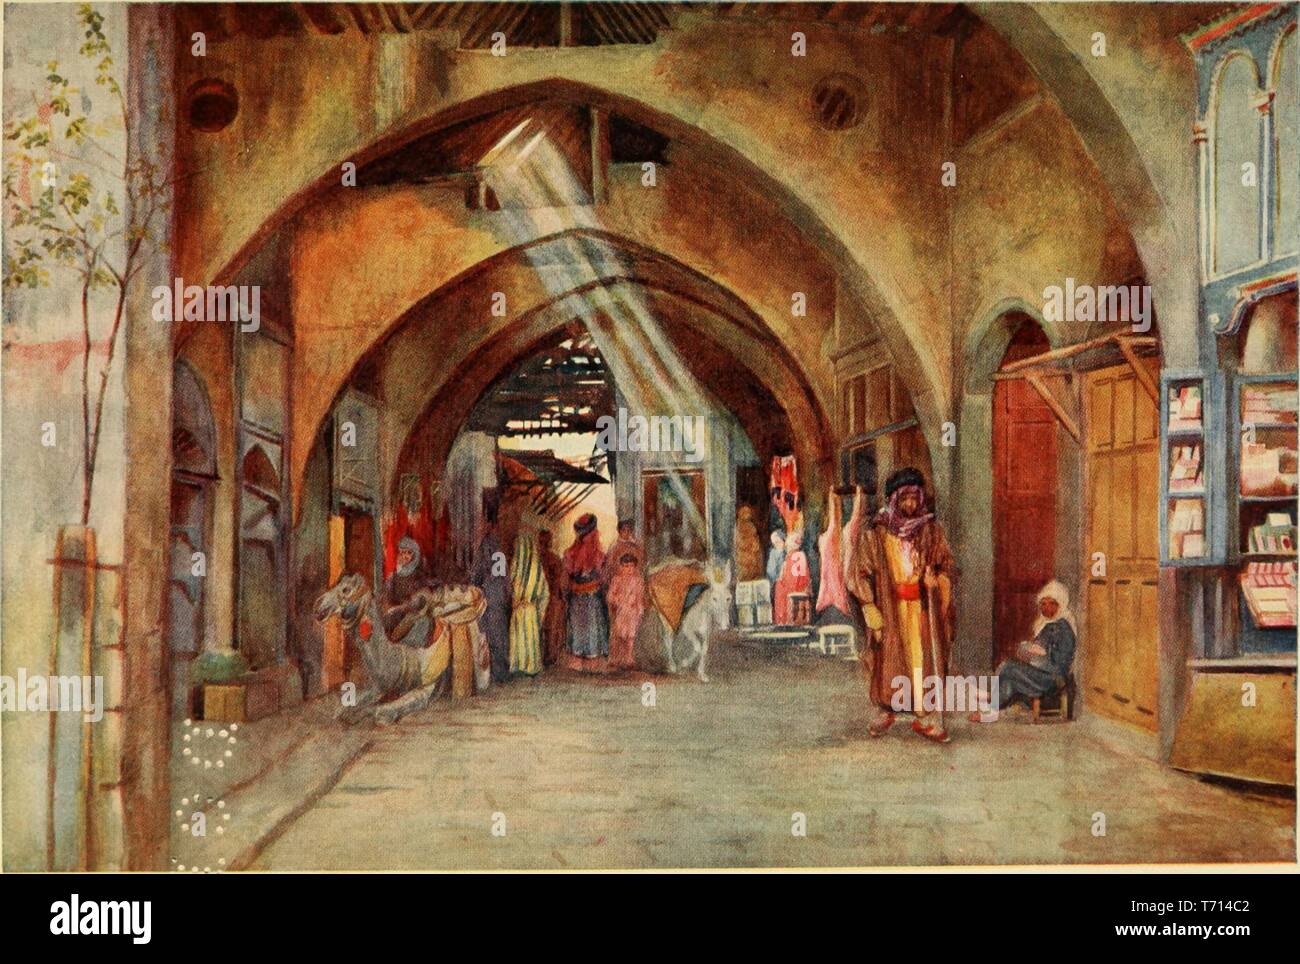 Aquarell "Hamareh in Damaskus" von Walter Spencer Stanhope Tyrwhitt, aus dem Buch "Kairo, Jerusalem und Damaskus" von David Samuel, 1912. Mit freundlicher Genehmigung Internet Archive. () Stockfoto